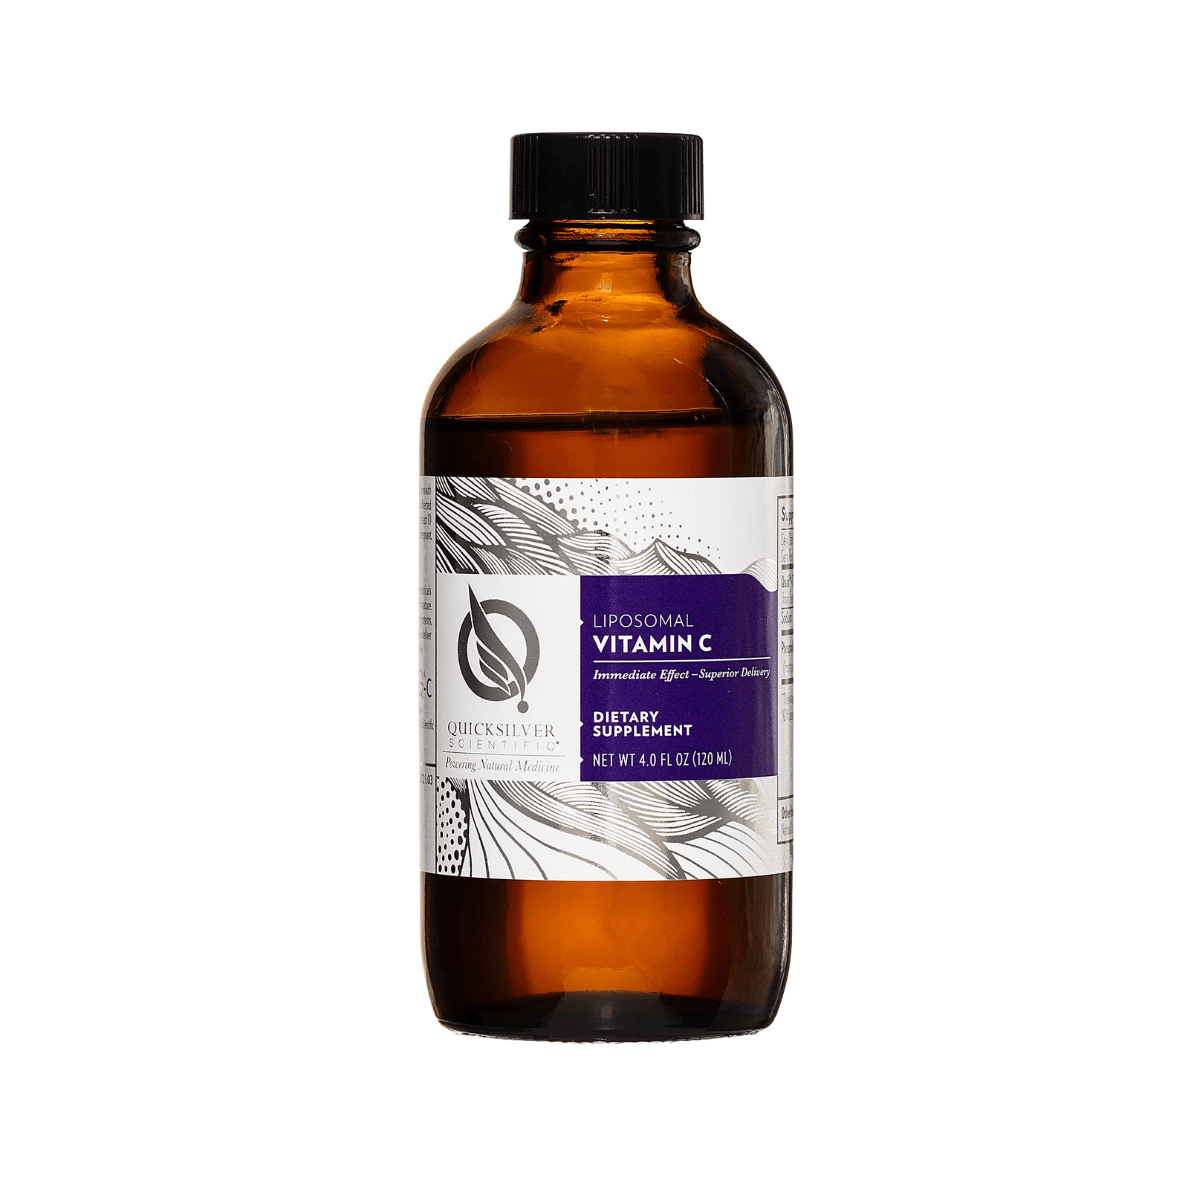 Image of Quicksilver Liposomal Vitamin C Liquid